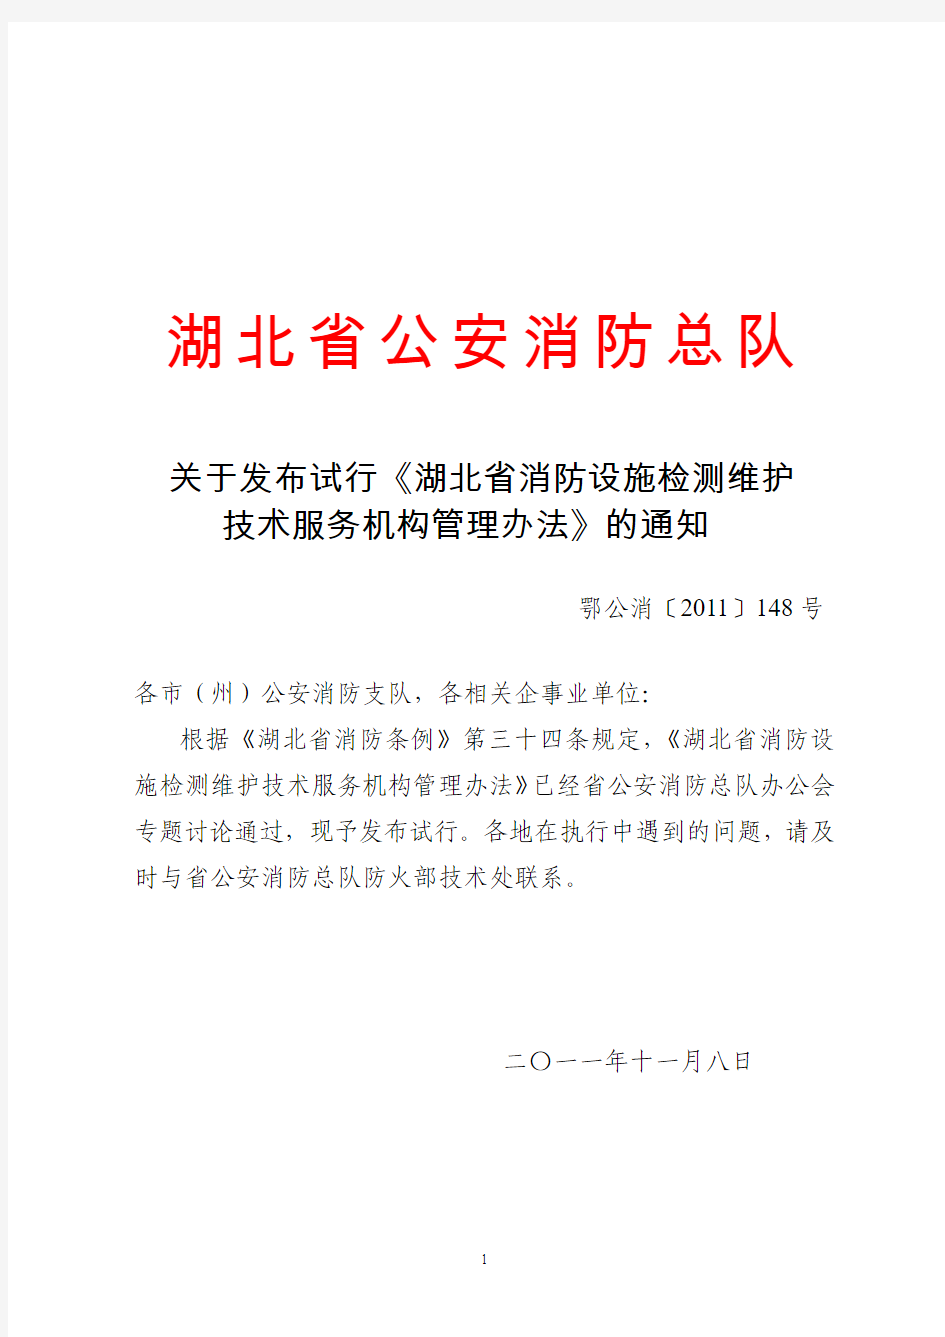 关于发布试行《湖北省消防设施检测维护技术服务机构管理办法》的通知